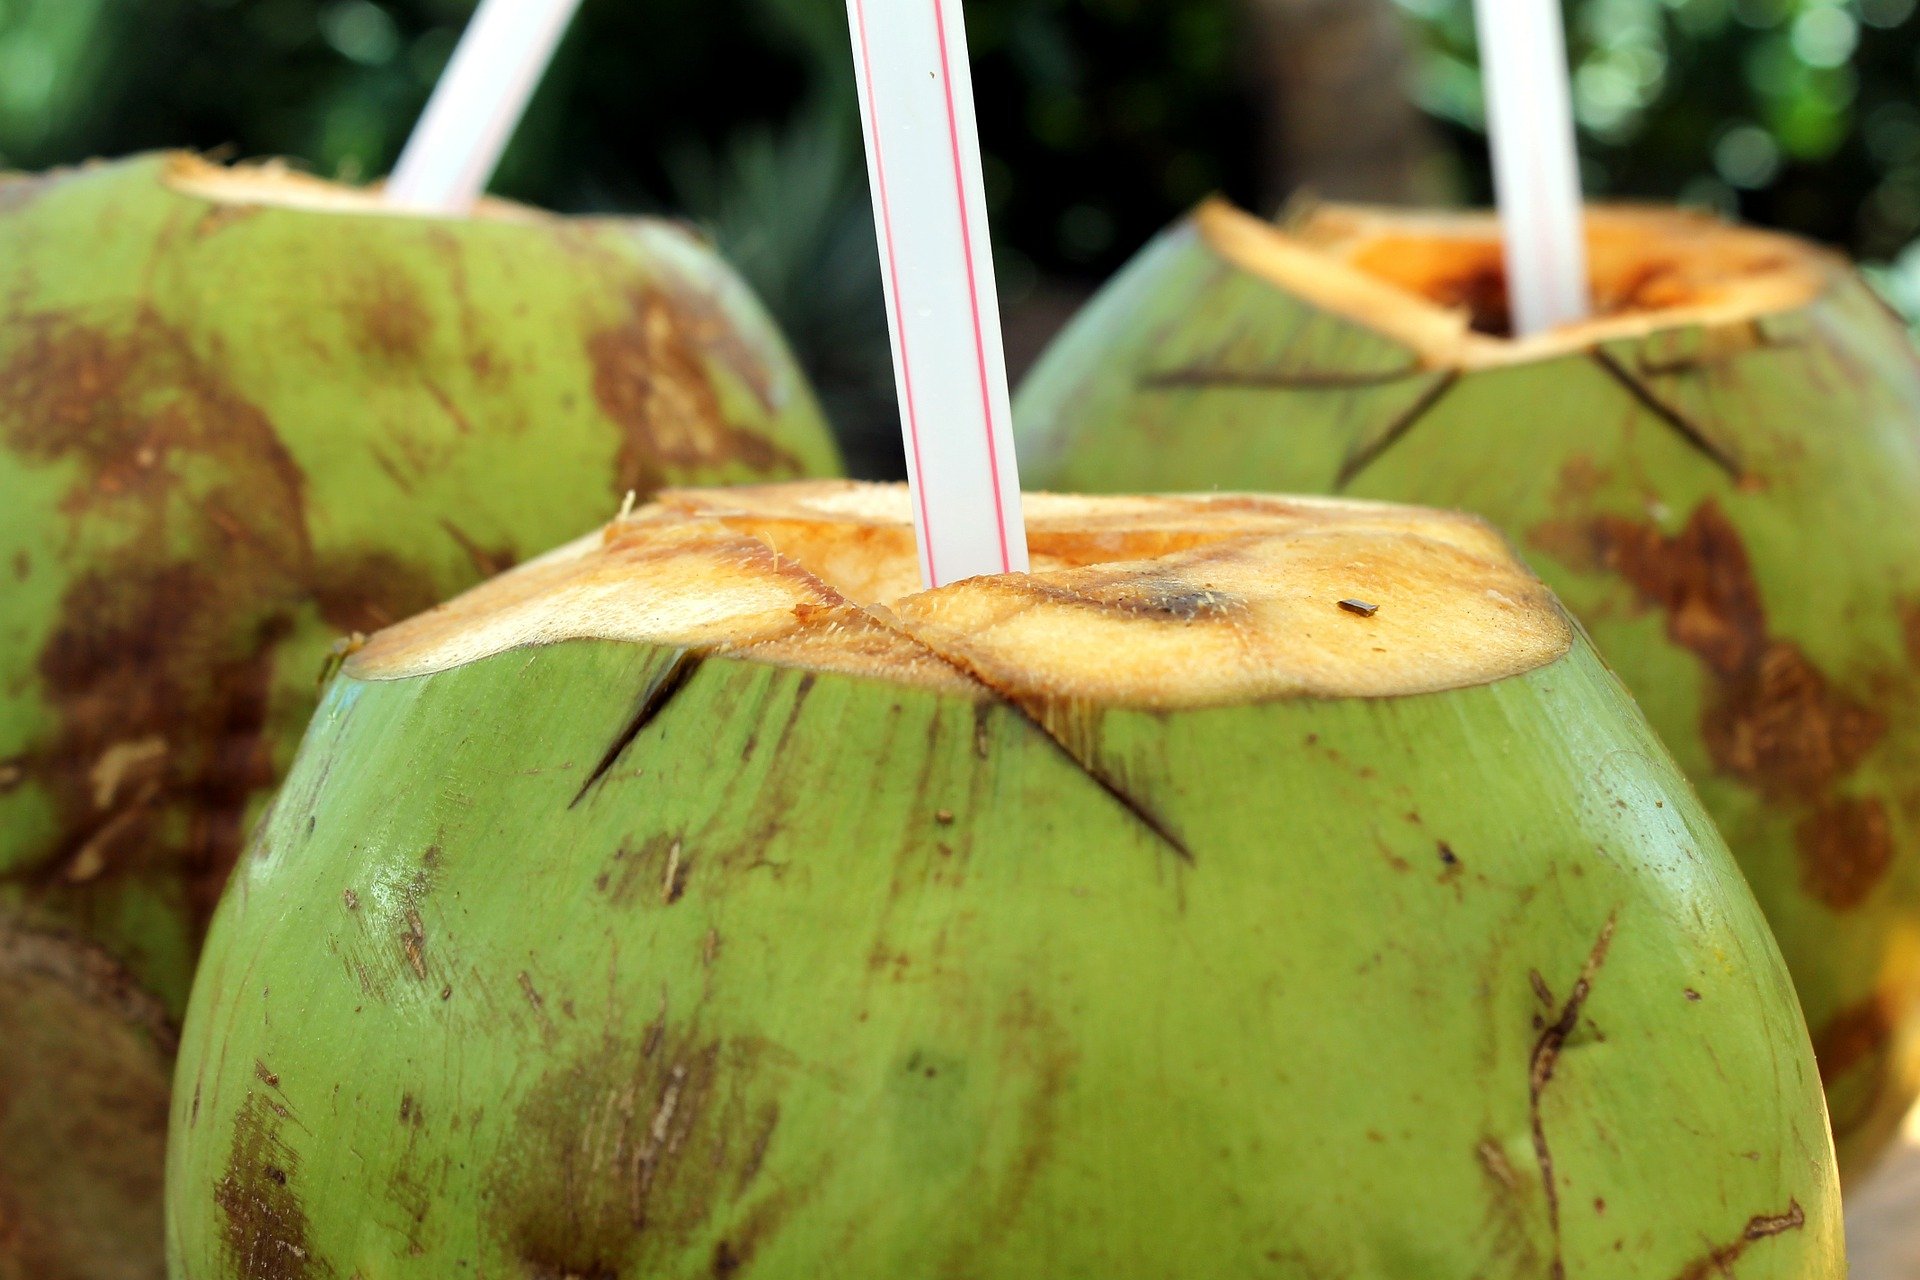 Minum air kelapa memberikan banyak manfaat kesehatan bagi tubuh. (Ilustrasi: Pixabay)